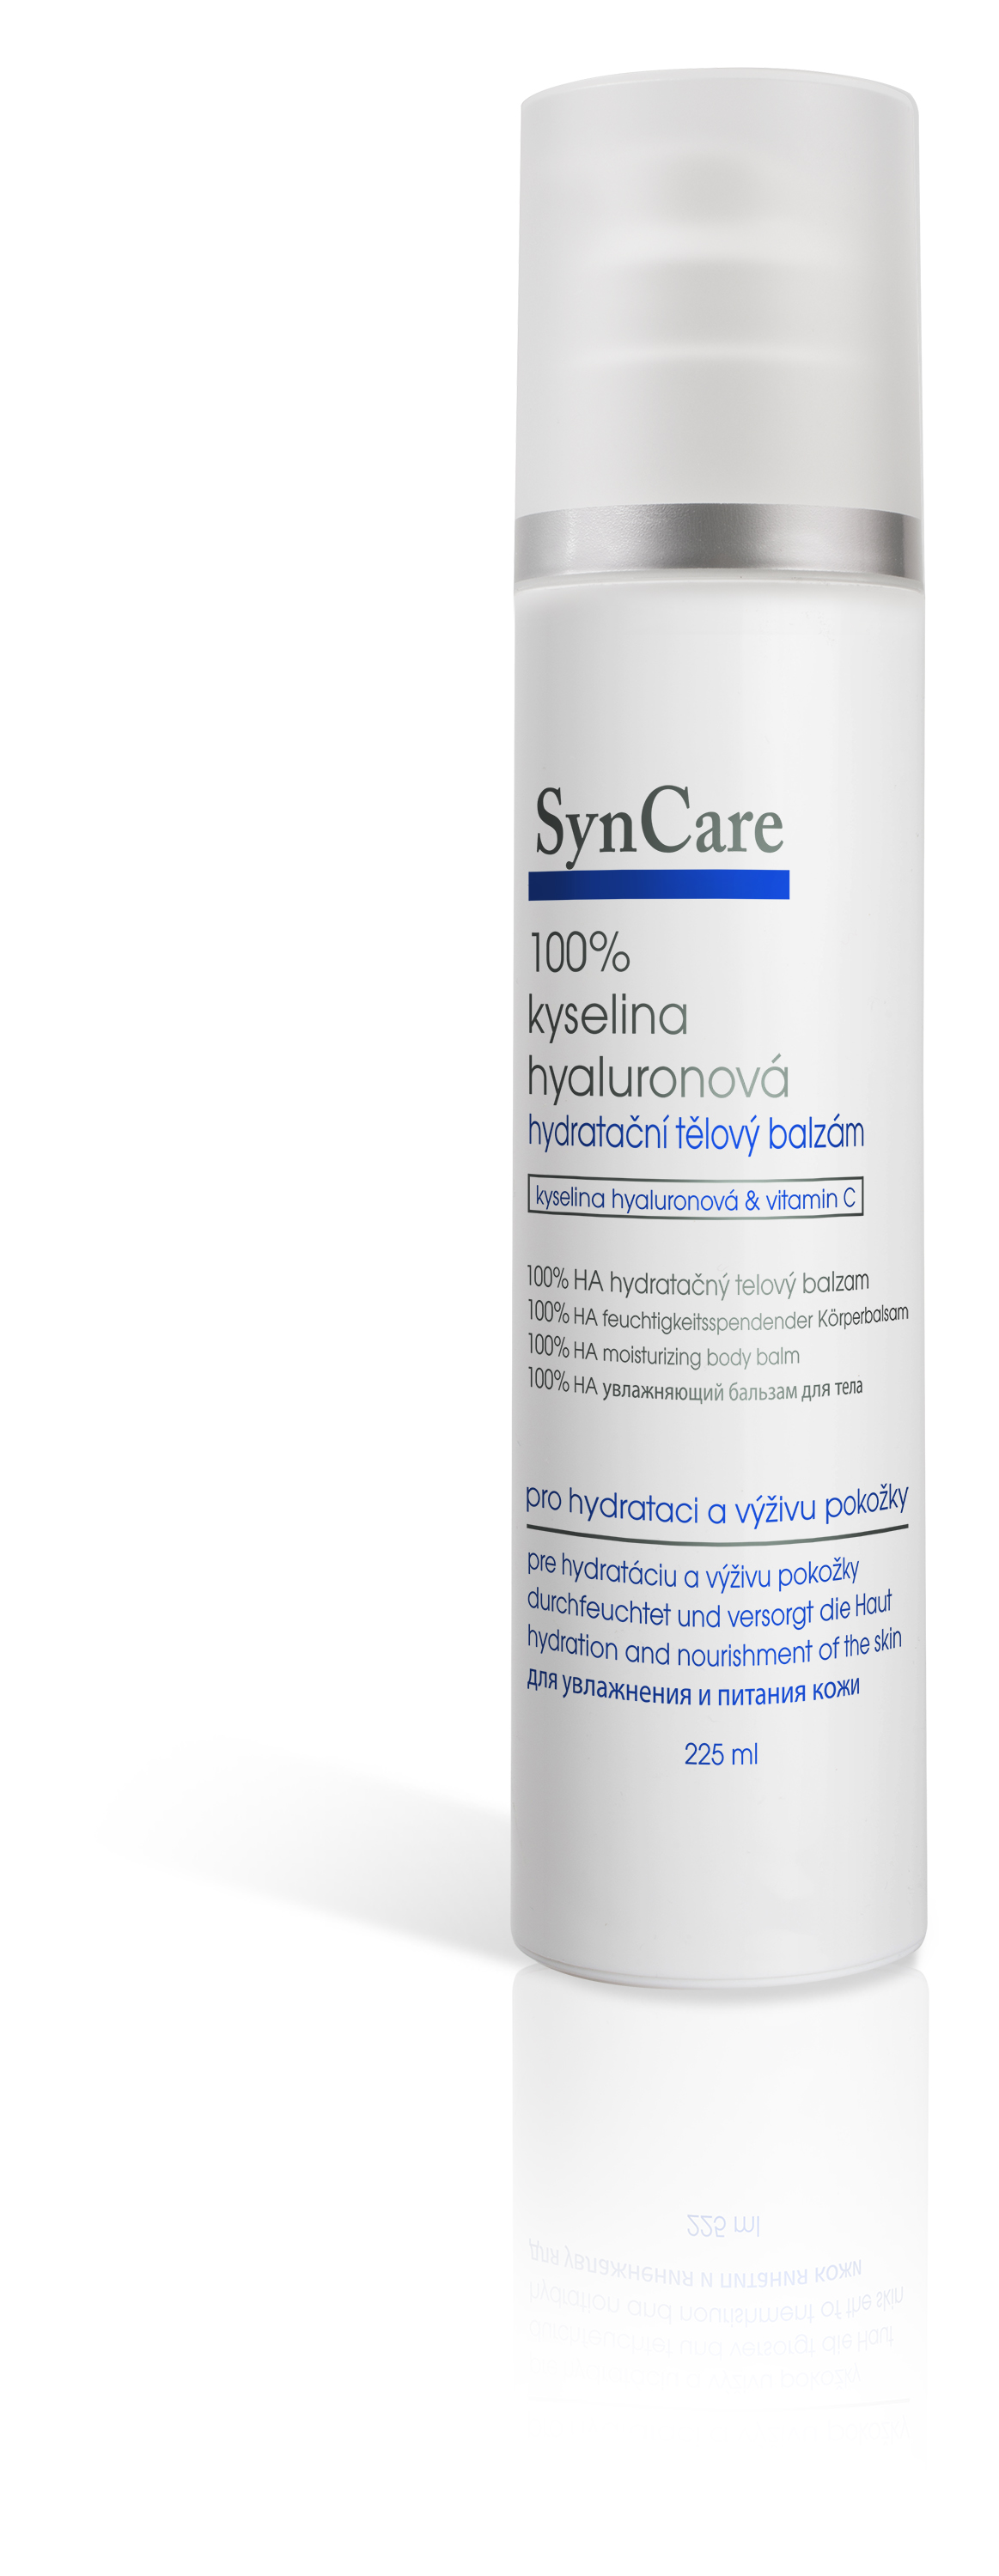 SynCare Hydratační tělový balzám 100% kyselina hyaluronová 225 ml